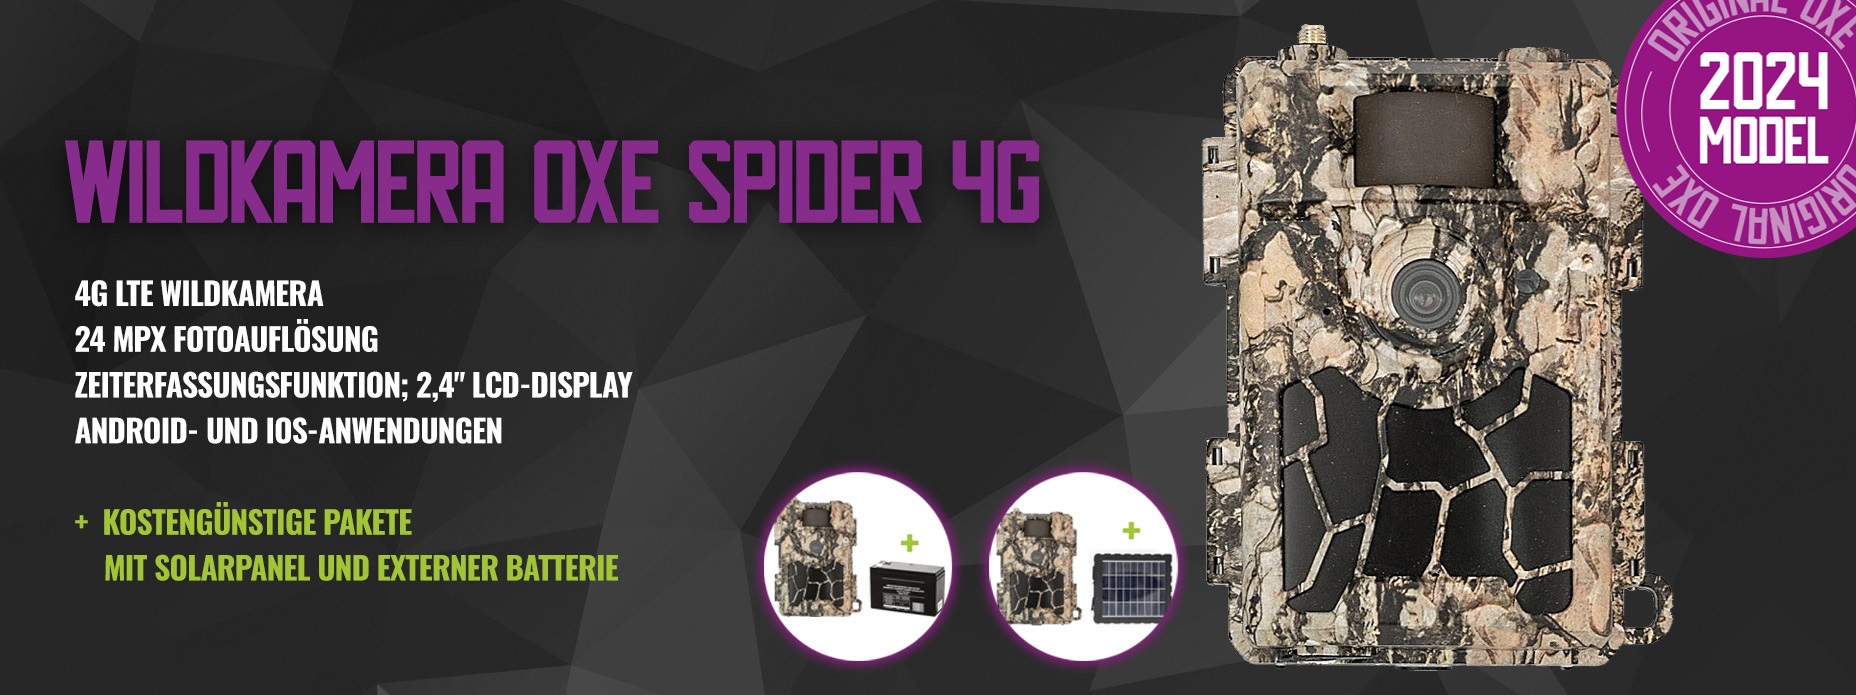 Wildkamera OXE Spider 4G